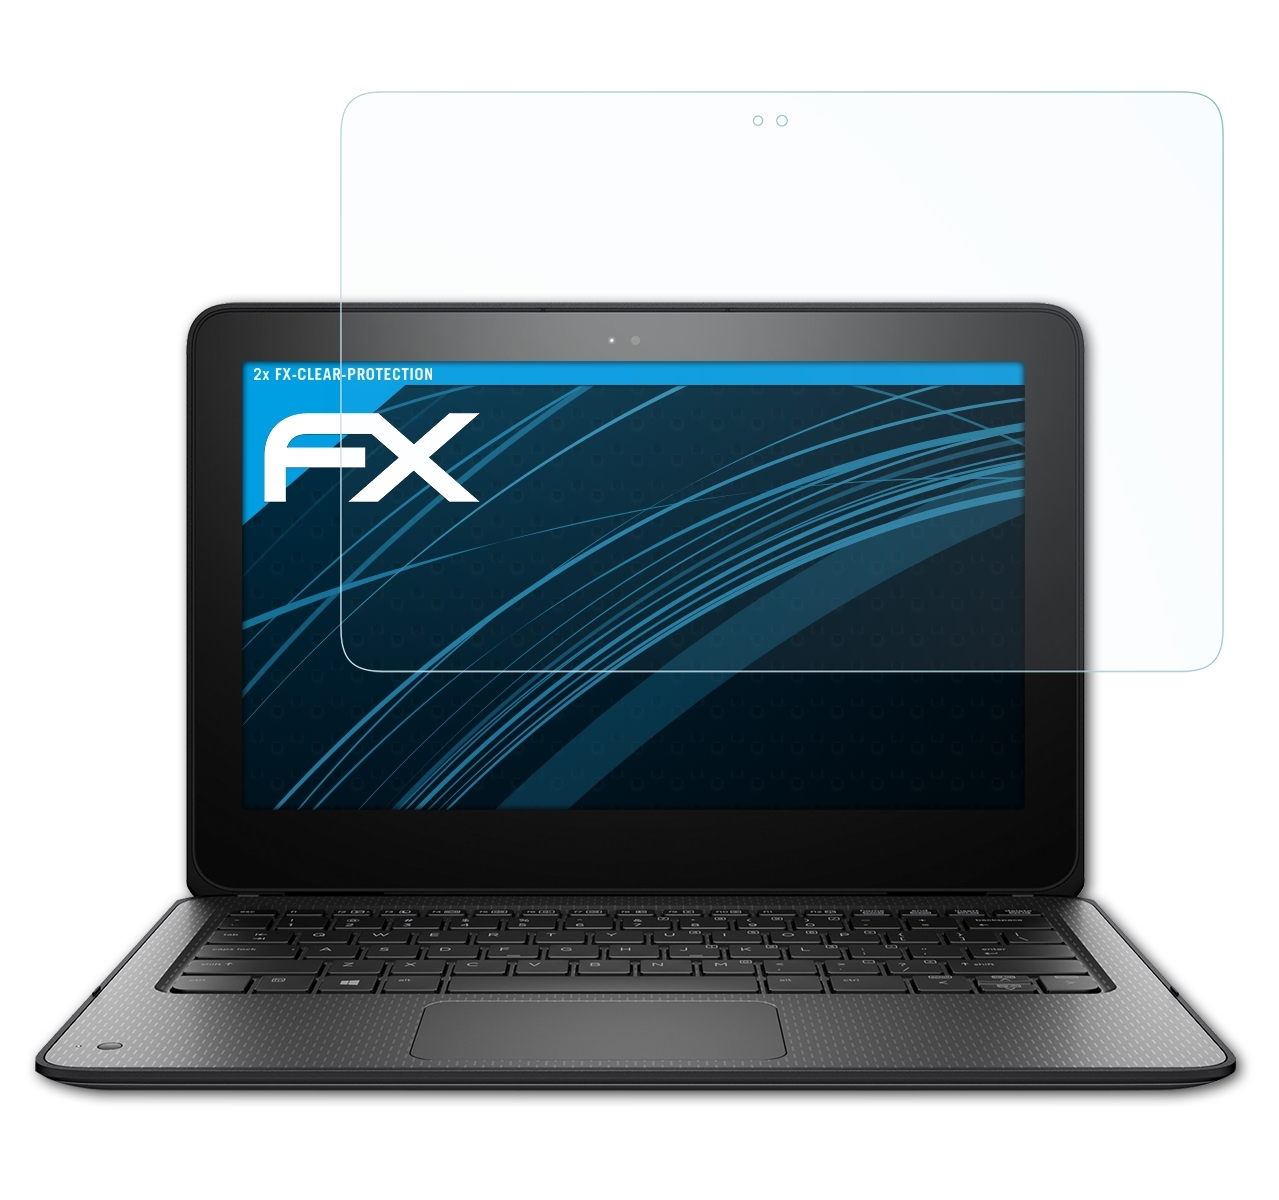 FX-Clear 2x x360 11 G1 Displayschutz(für ProBook EE) HP ATFOLIX